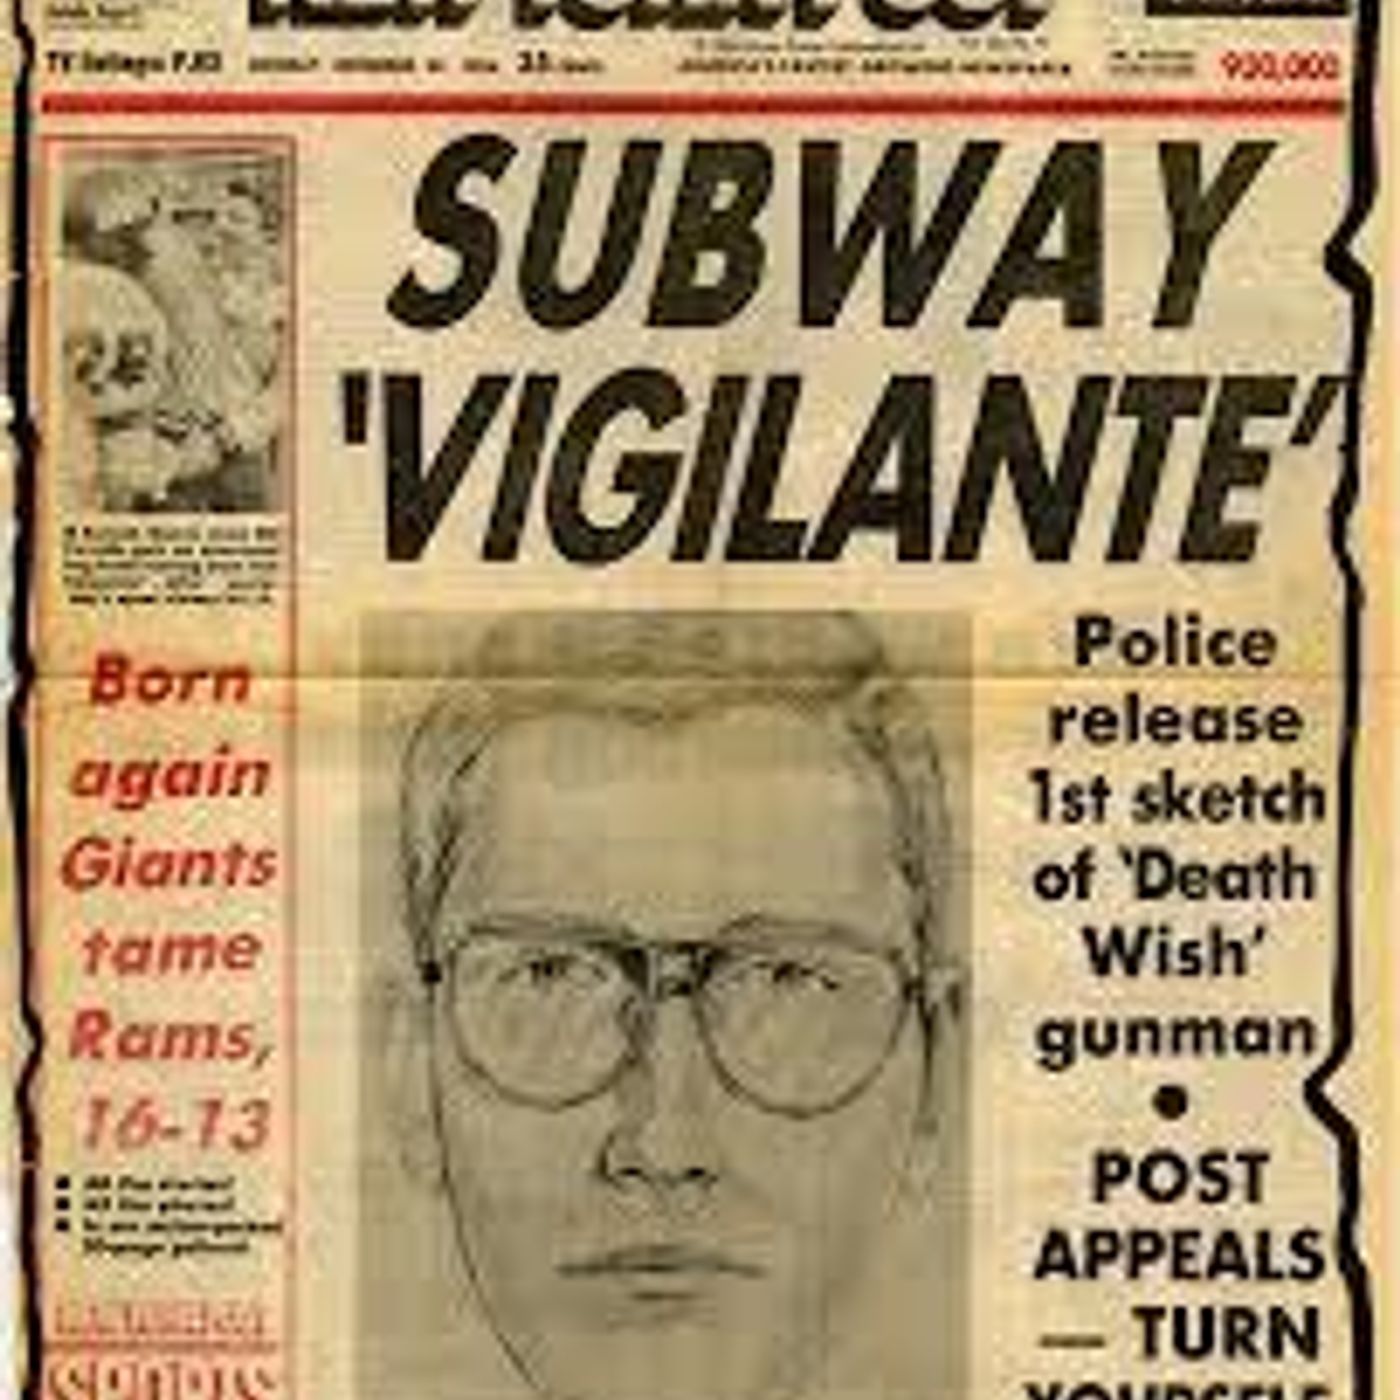 141: The Subway Vigilante (Trial By Media Ep. 2)